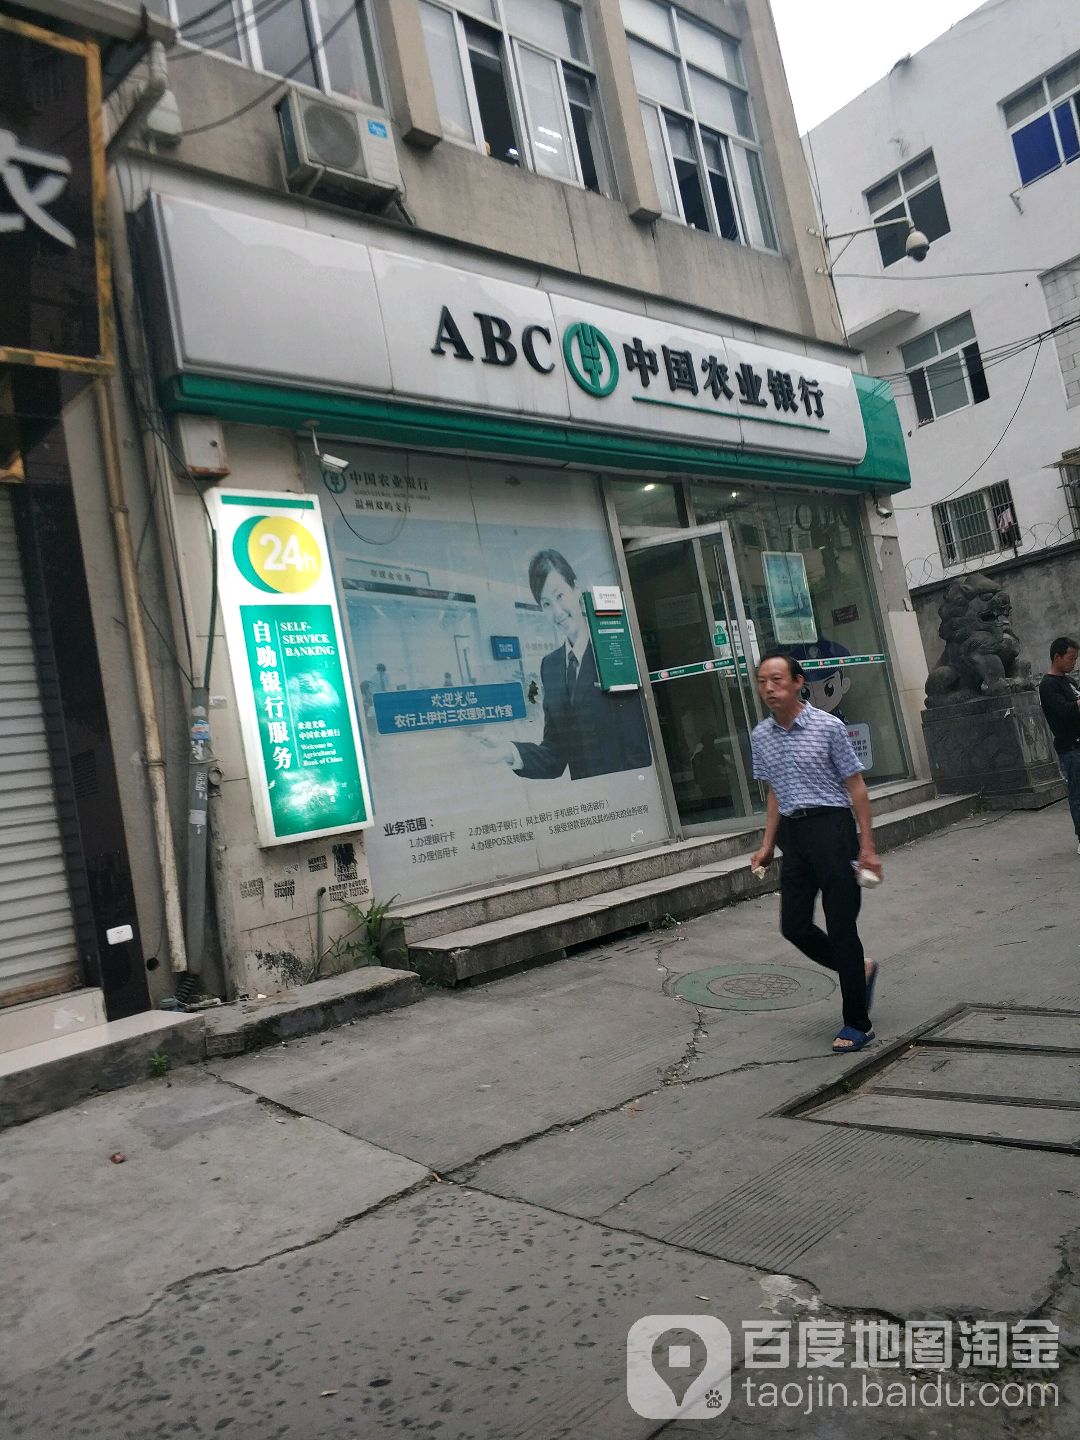 中國農業銀行24小時自助銀行(正岙路)